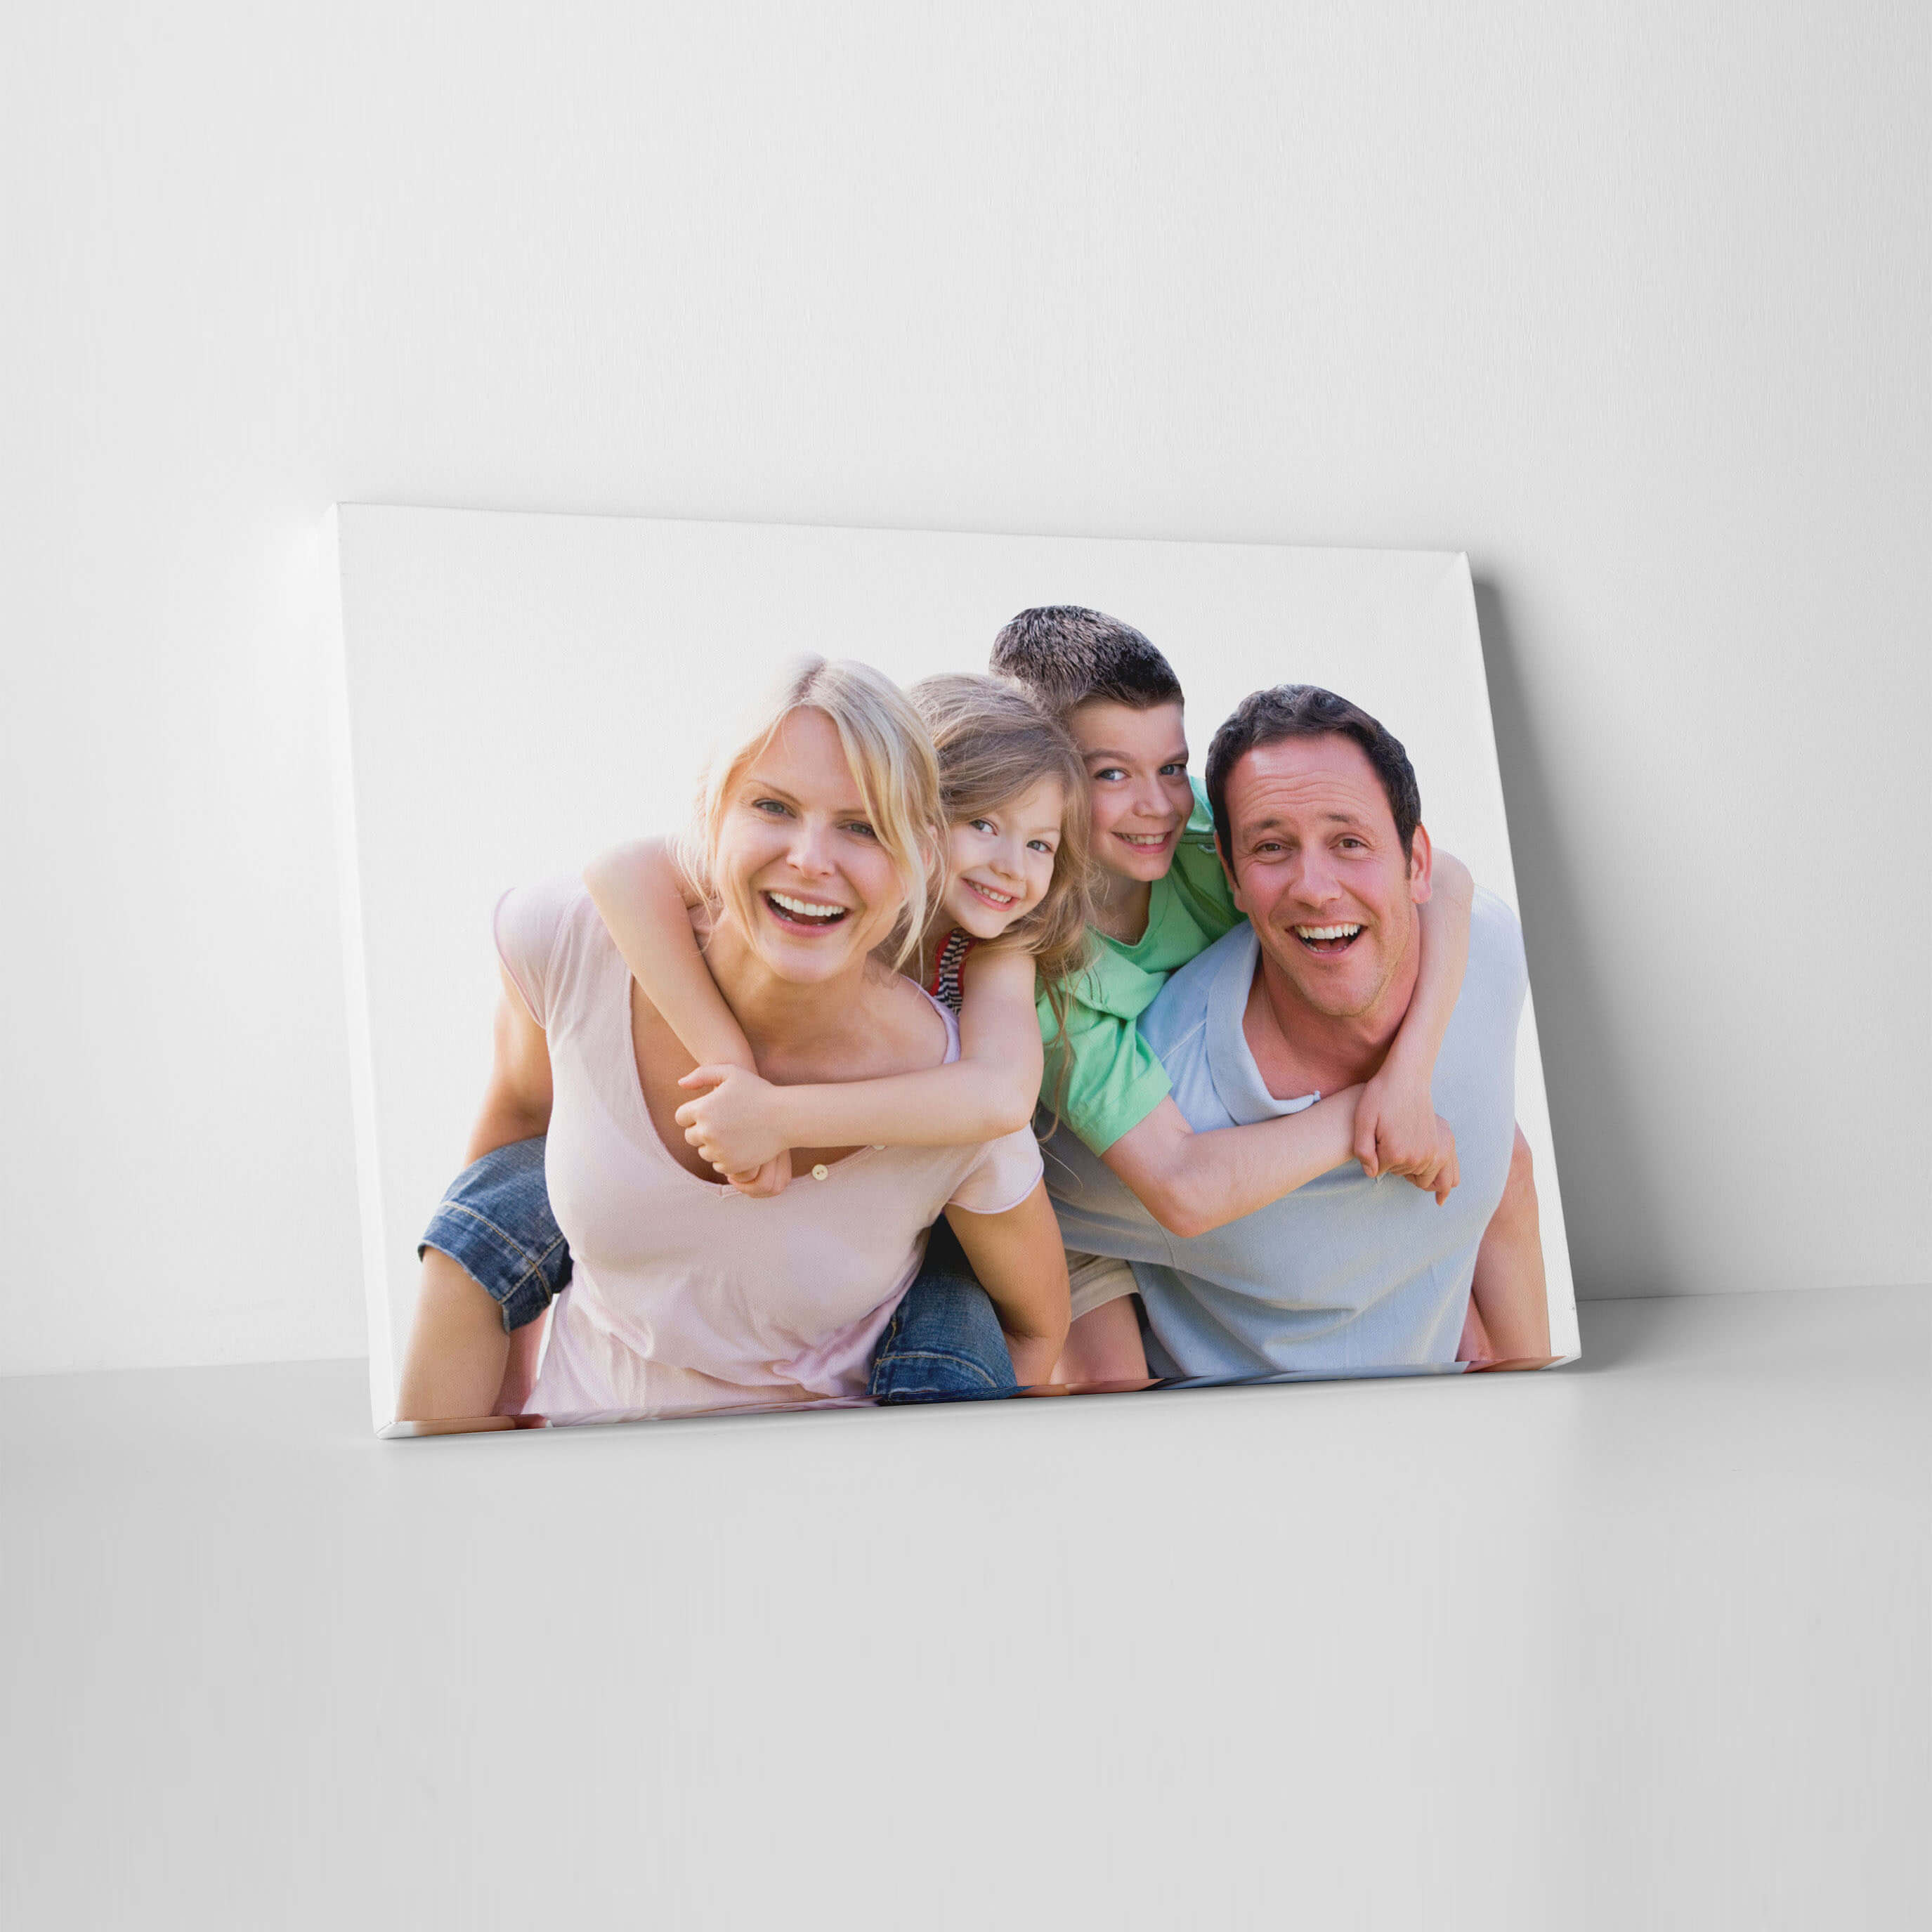 Print Family Photos on Canvas1